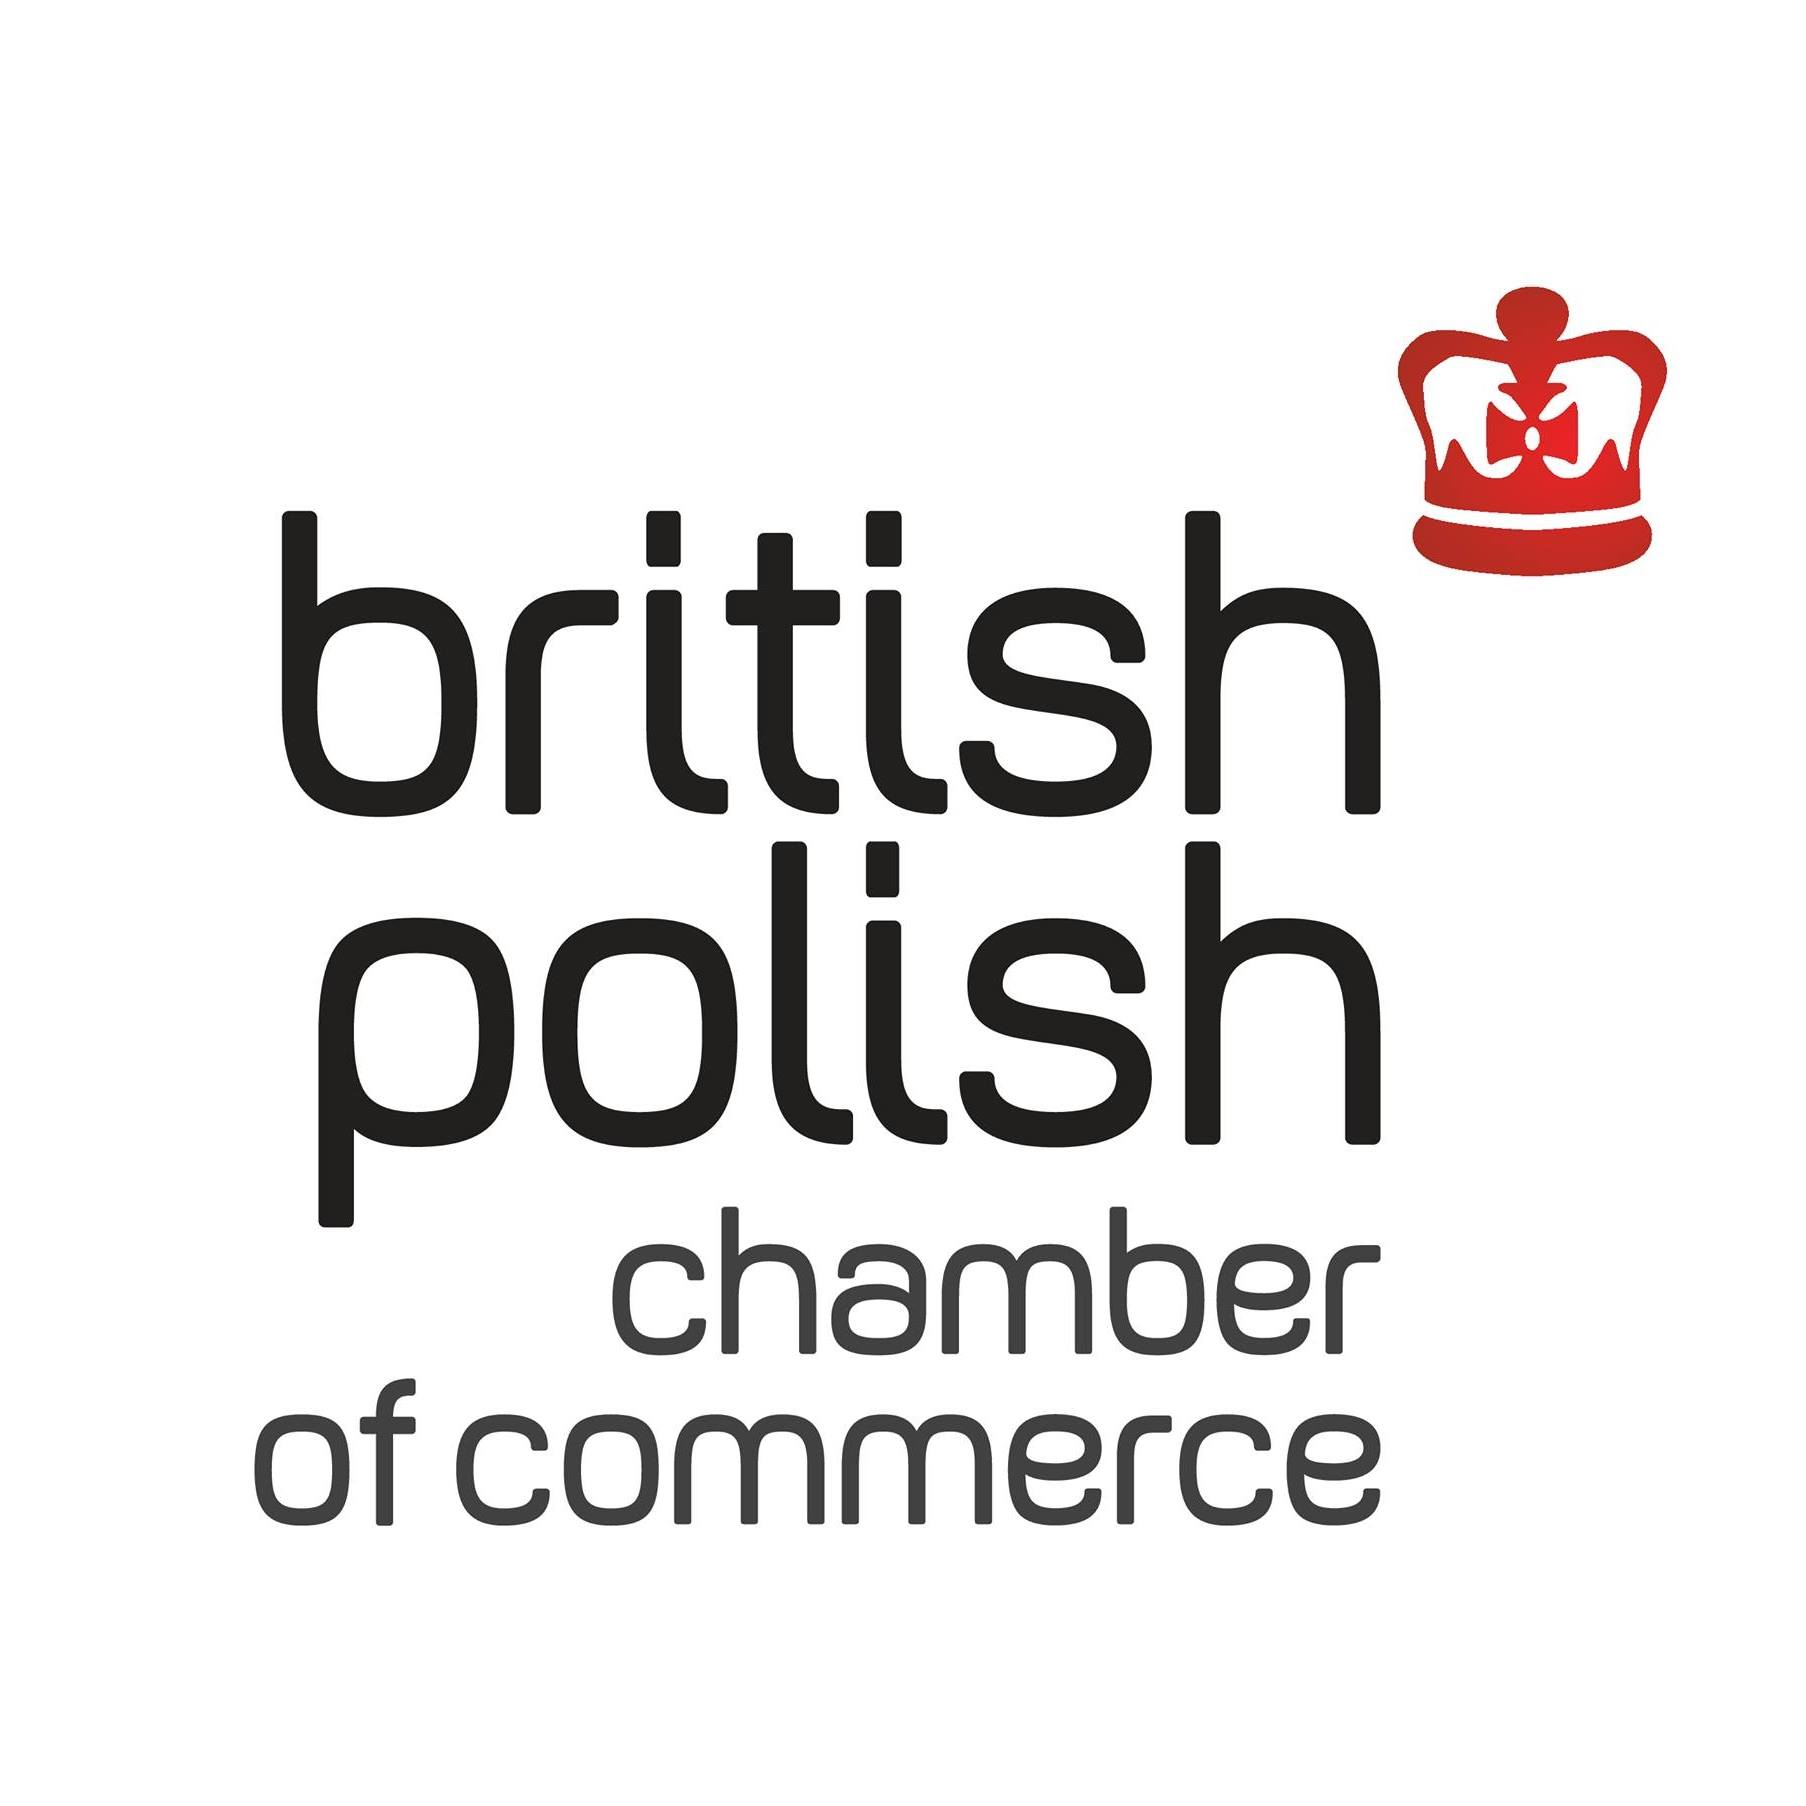 British Polish Chamber of Commerce